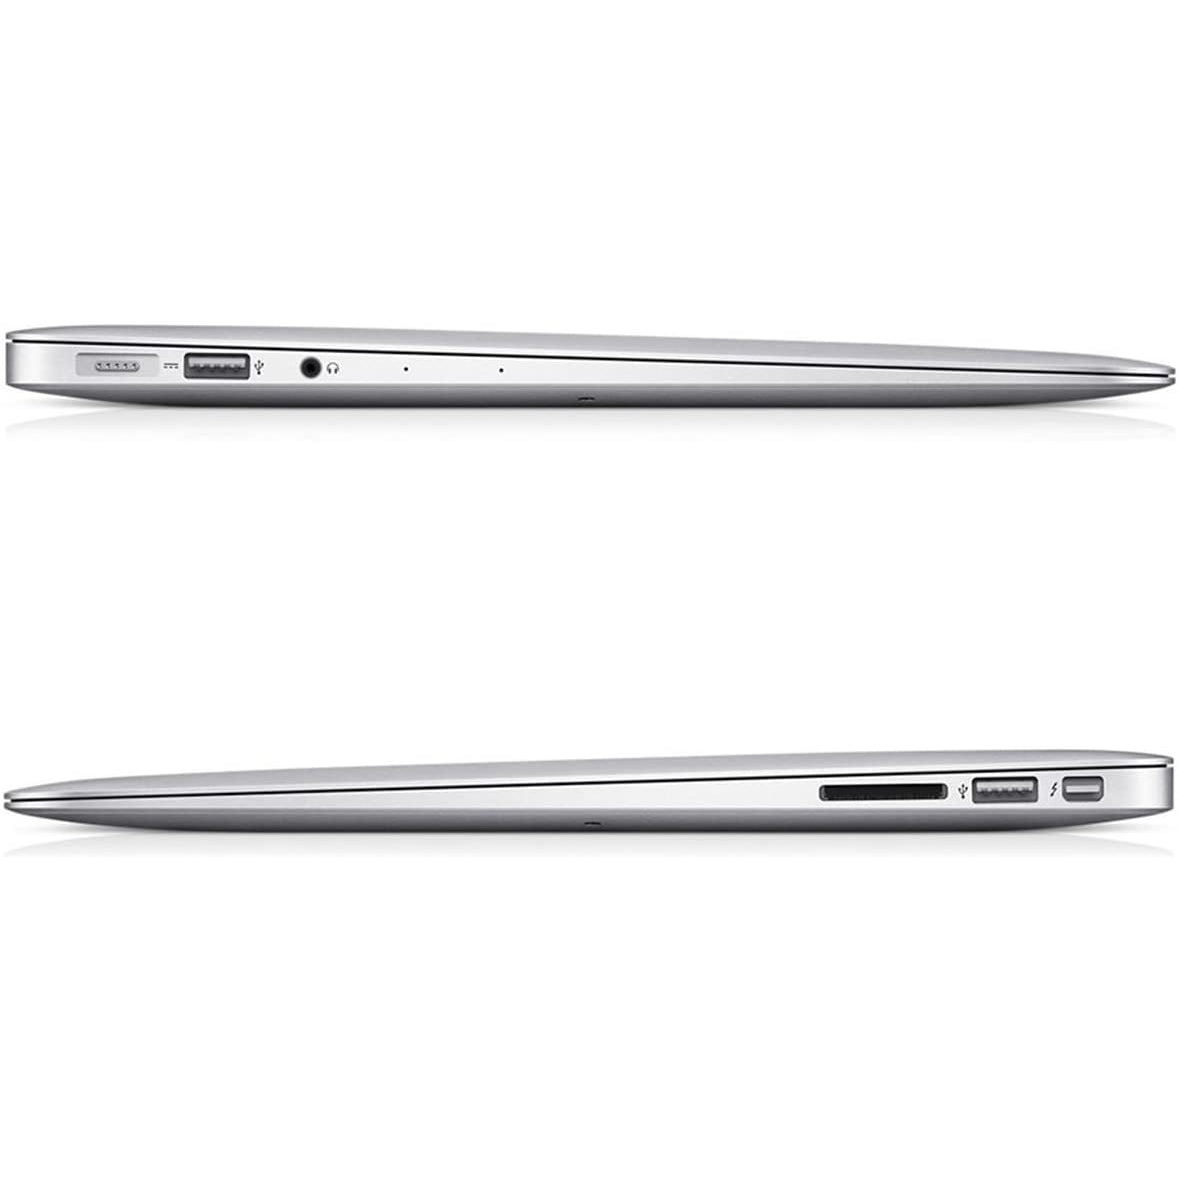 Apple MacBook Air 13.3'' MMGG2LLA Intel i5-5250U 8GB 256GB - Excellent